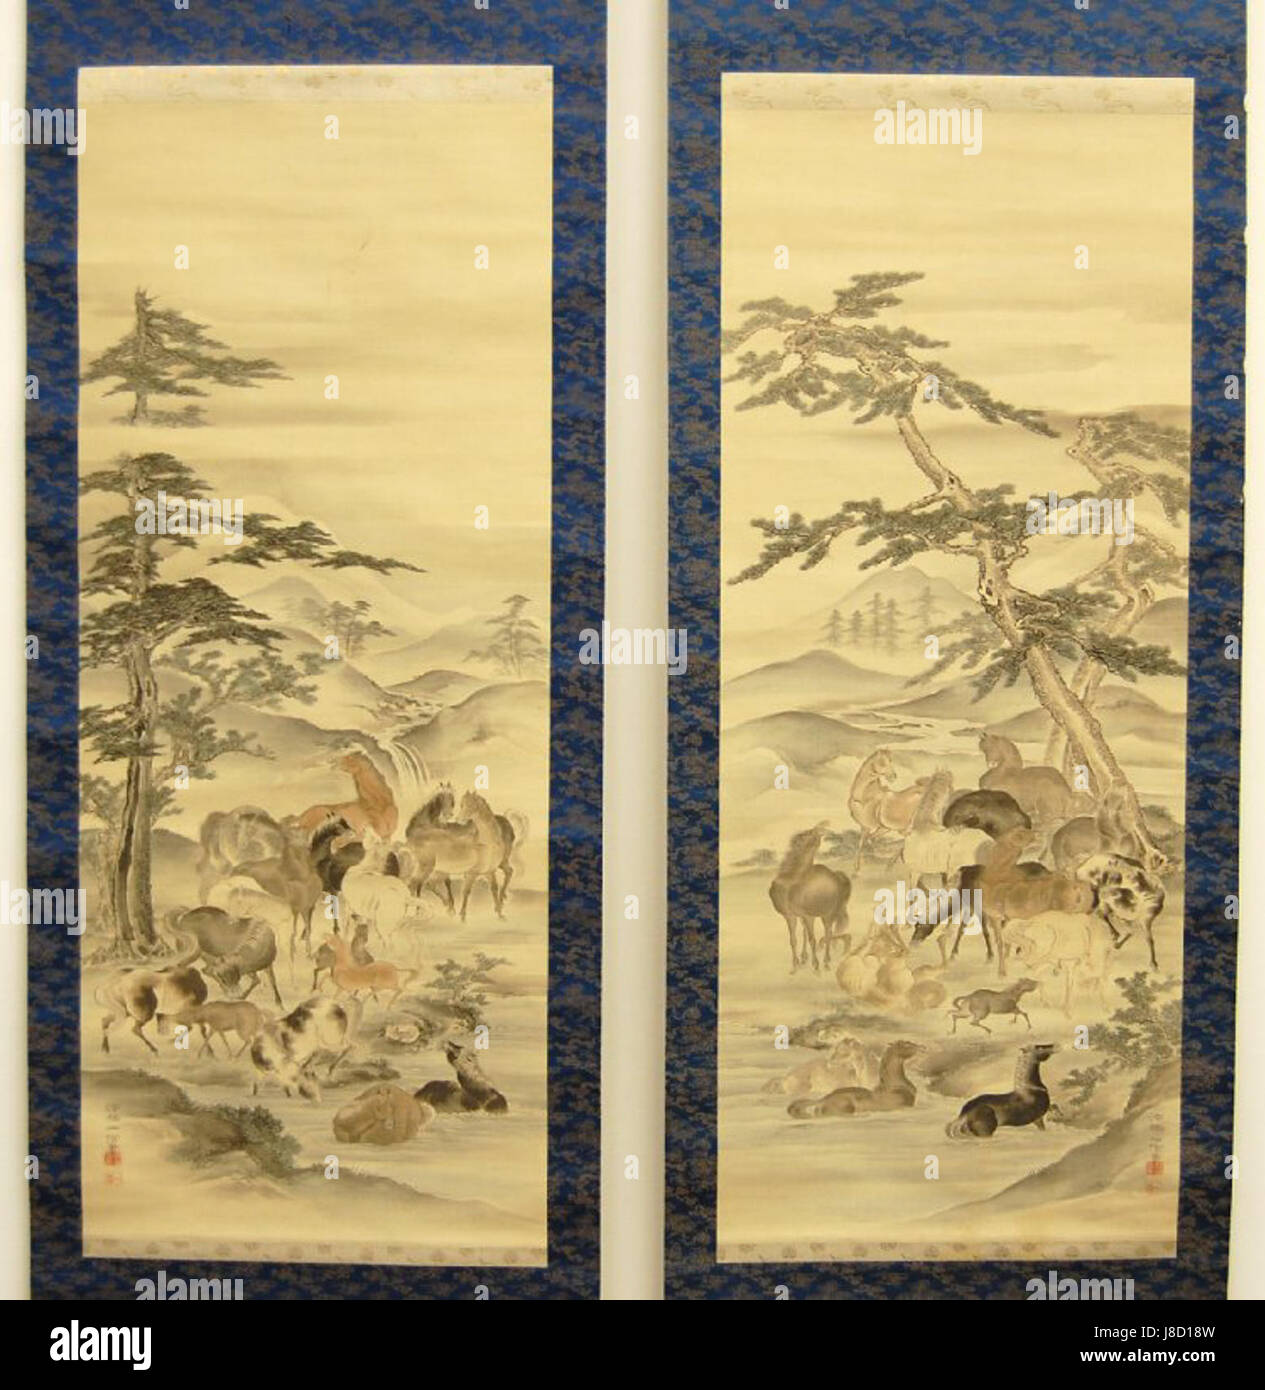 Kano Kazunobu par de pergaminos colgantes, pinturas. Grupo de caballos por la corriente del río. Tinta y colores sobre seda, 1856 62, Museo Británico Foto de stock